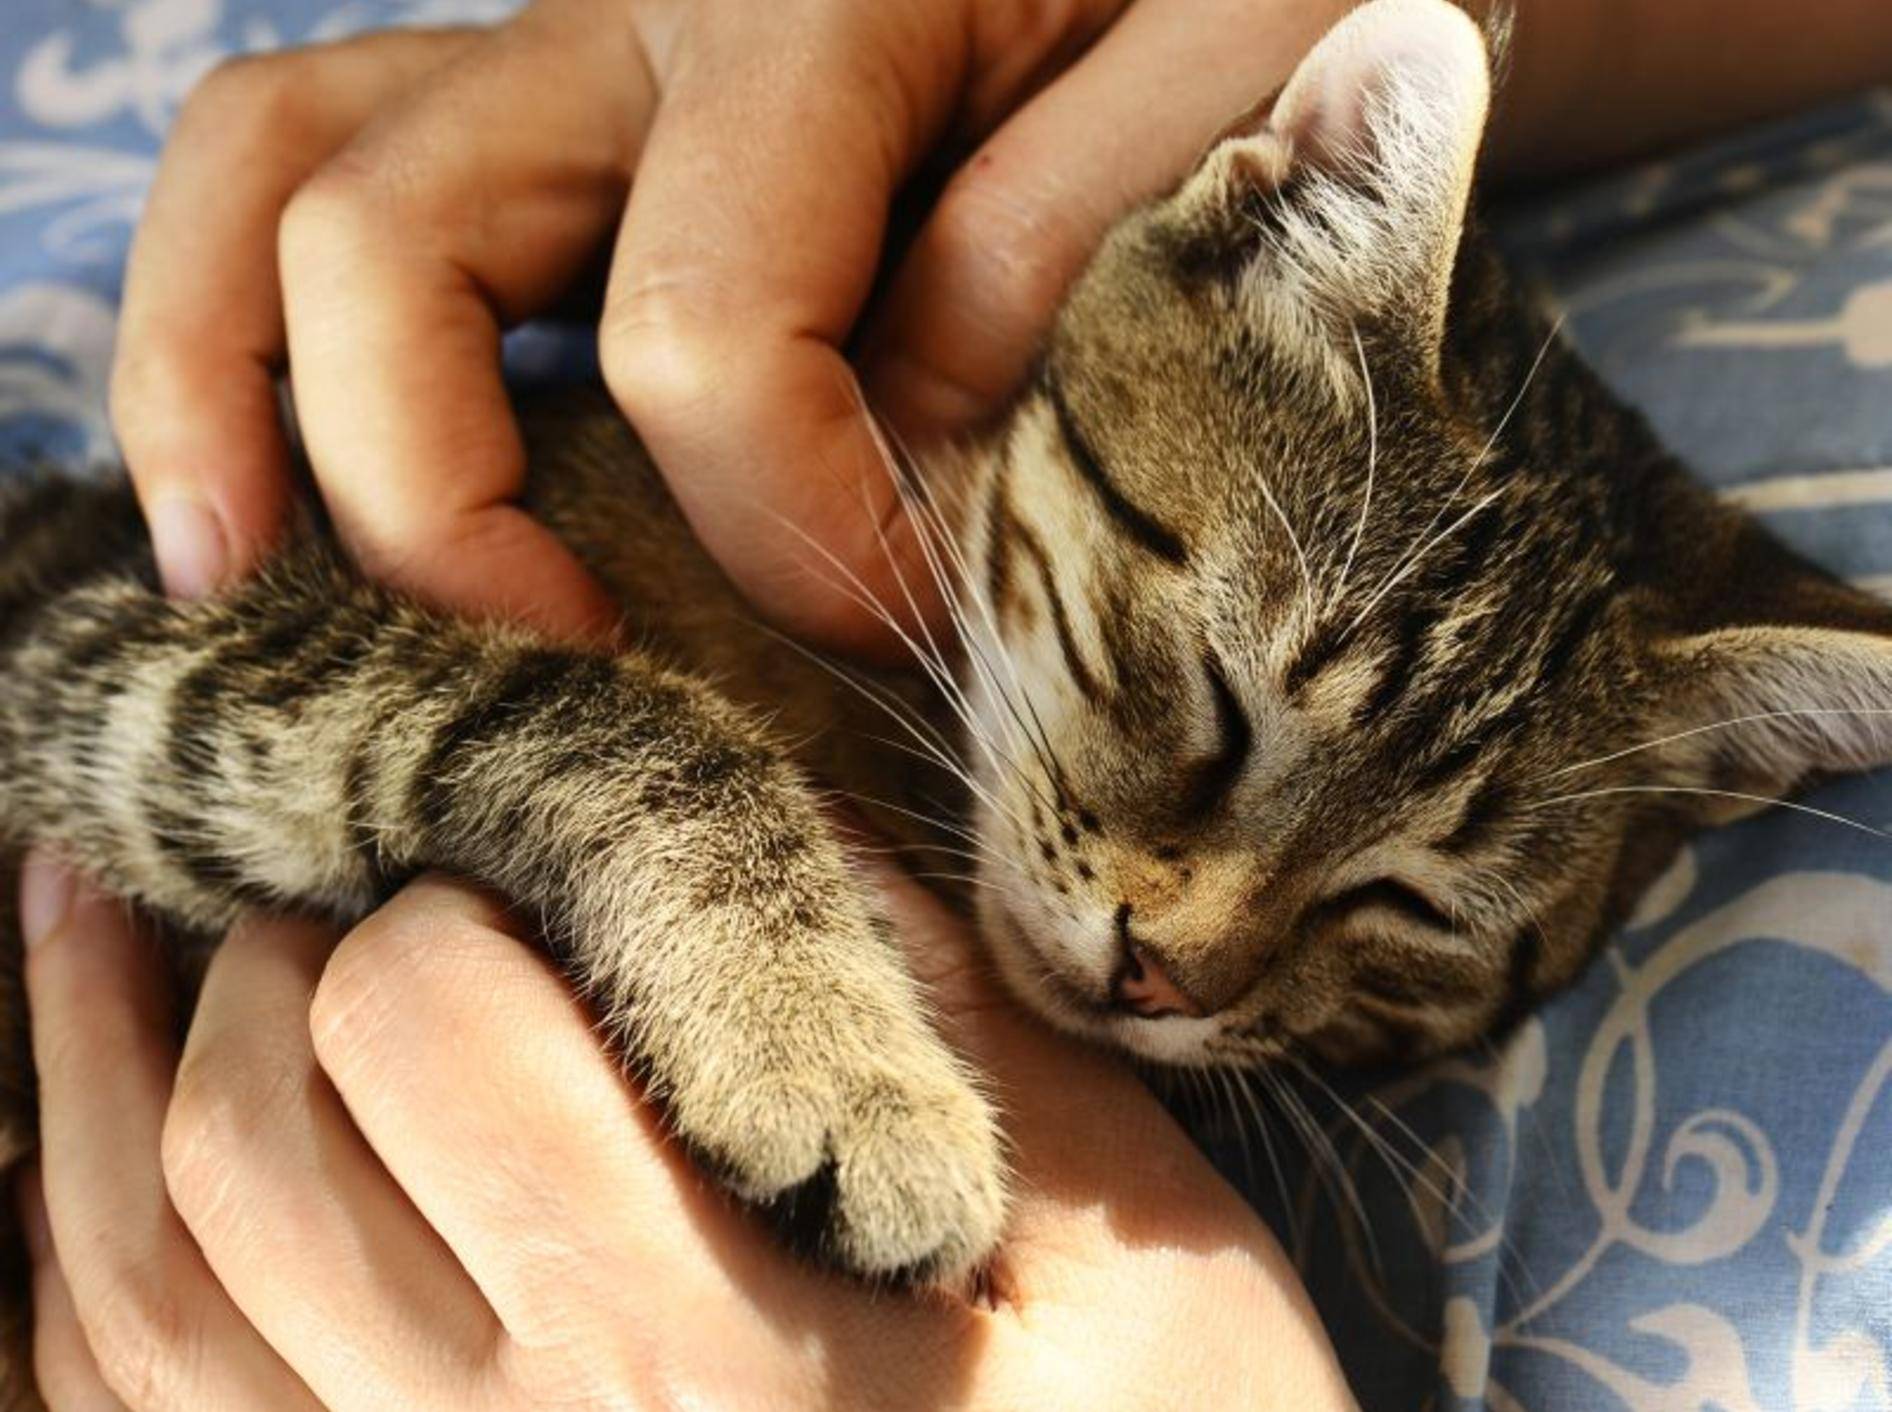 Eine schnurrende Katze hat eine positive Wirkung auf den Menschen – Bild: Shutterstock / Vinogradov Illya